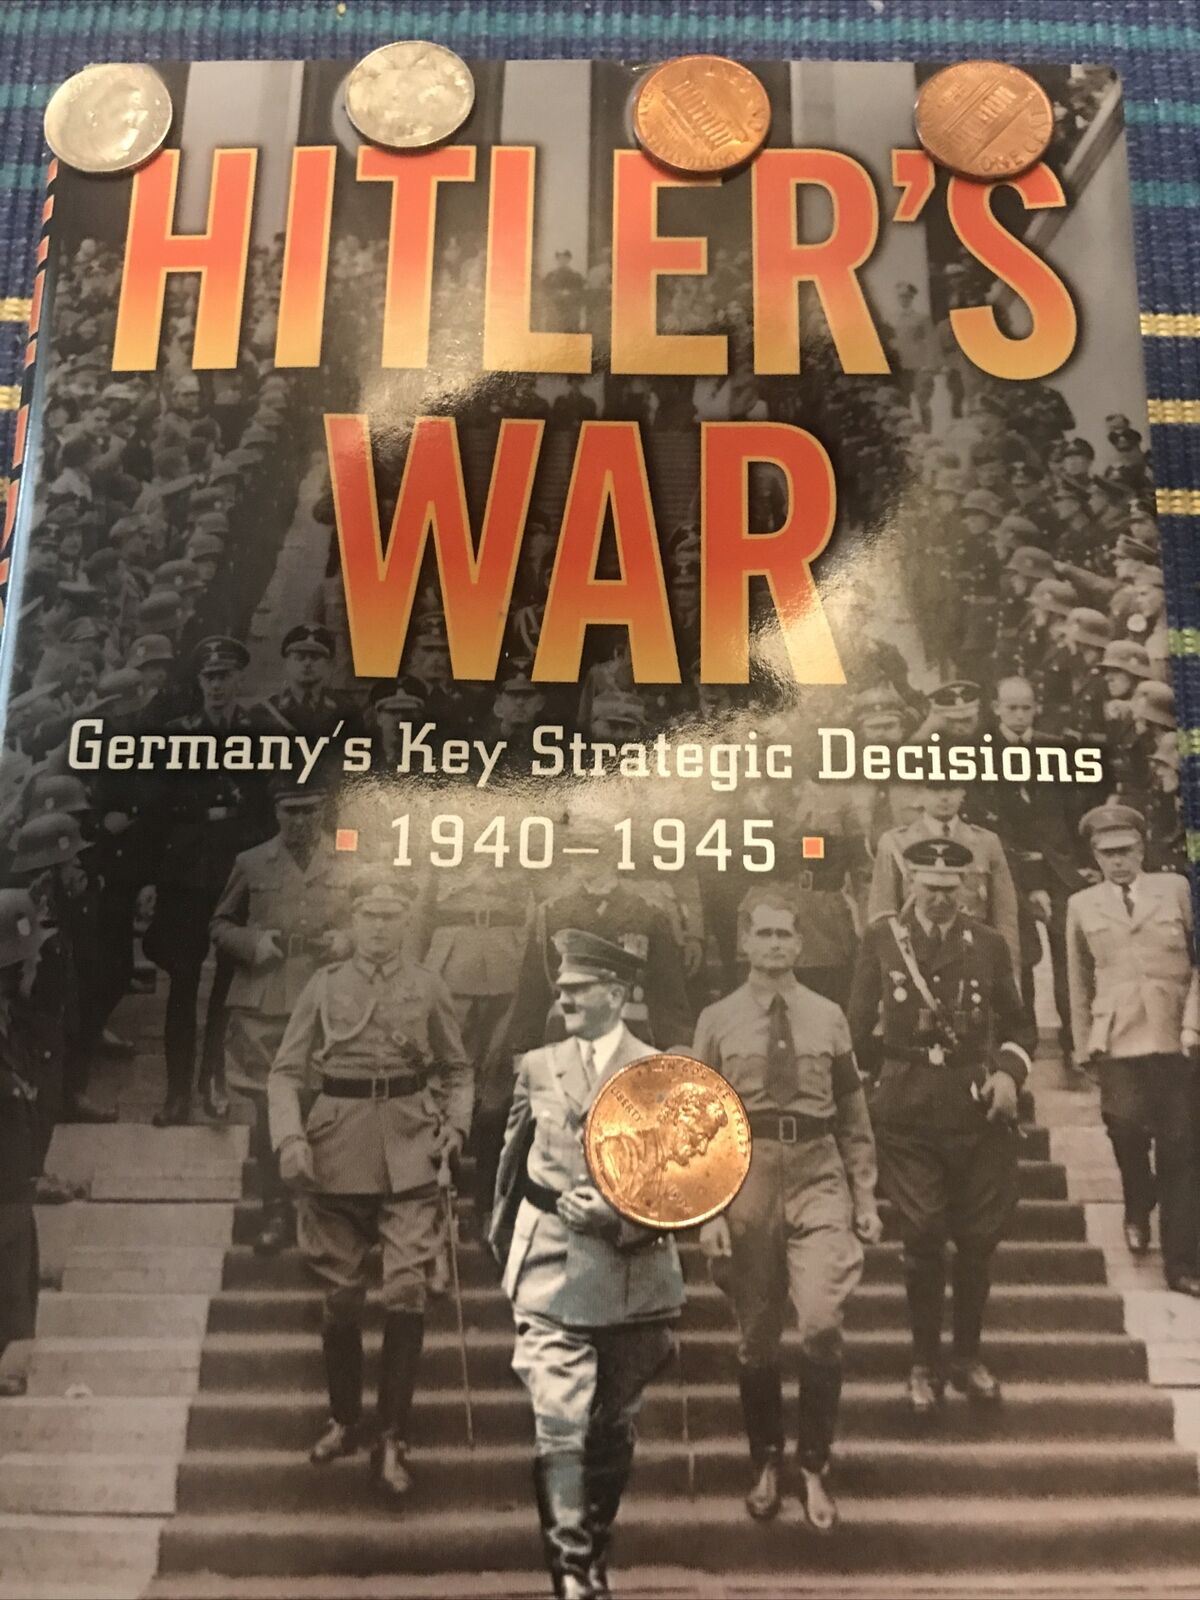 WWII book Hitler’s war by Magenheimer FD8